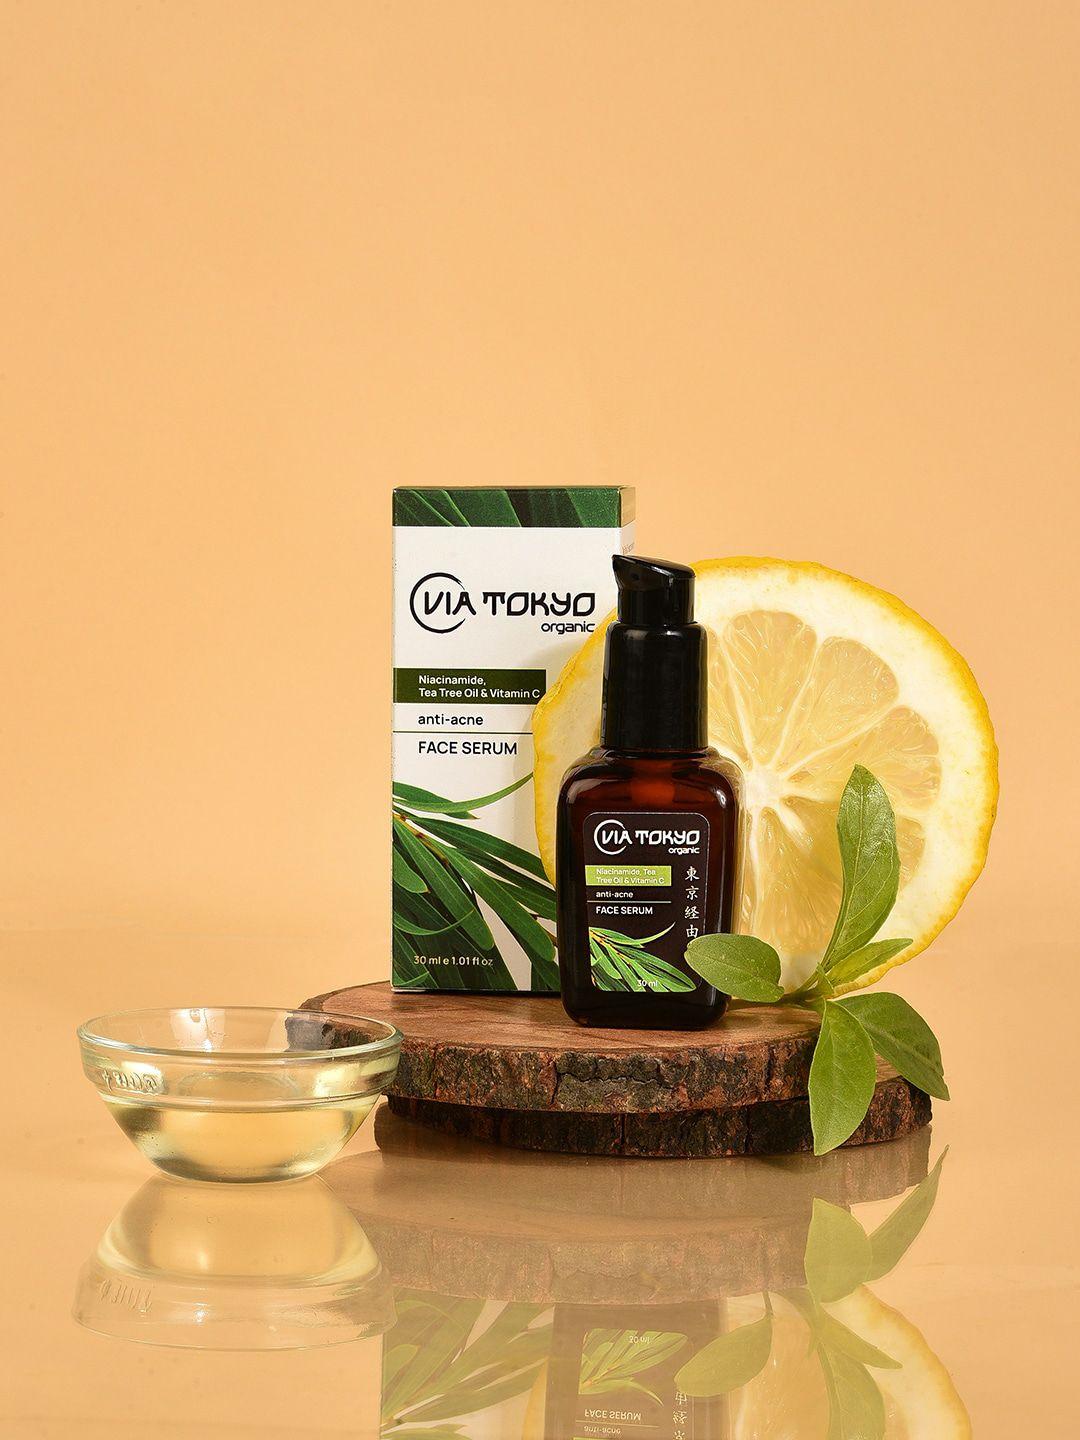 via tokyo organic niacinamide & tea tree oil vit c face serum - 30 ml